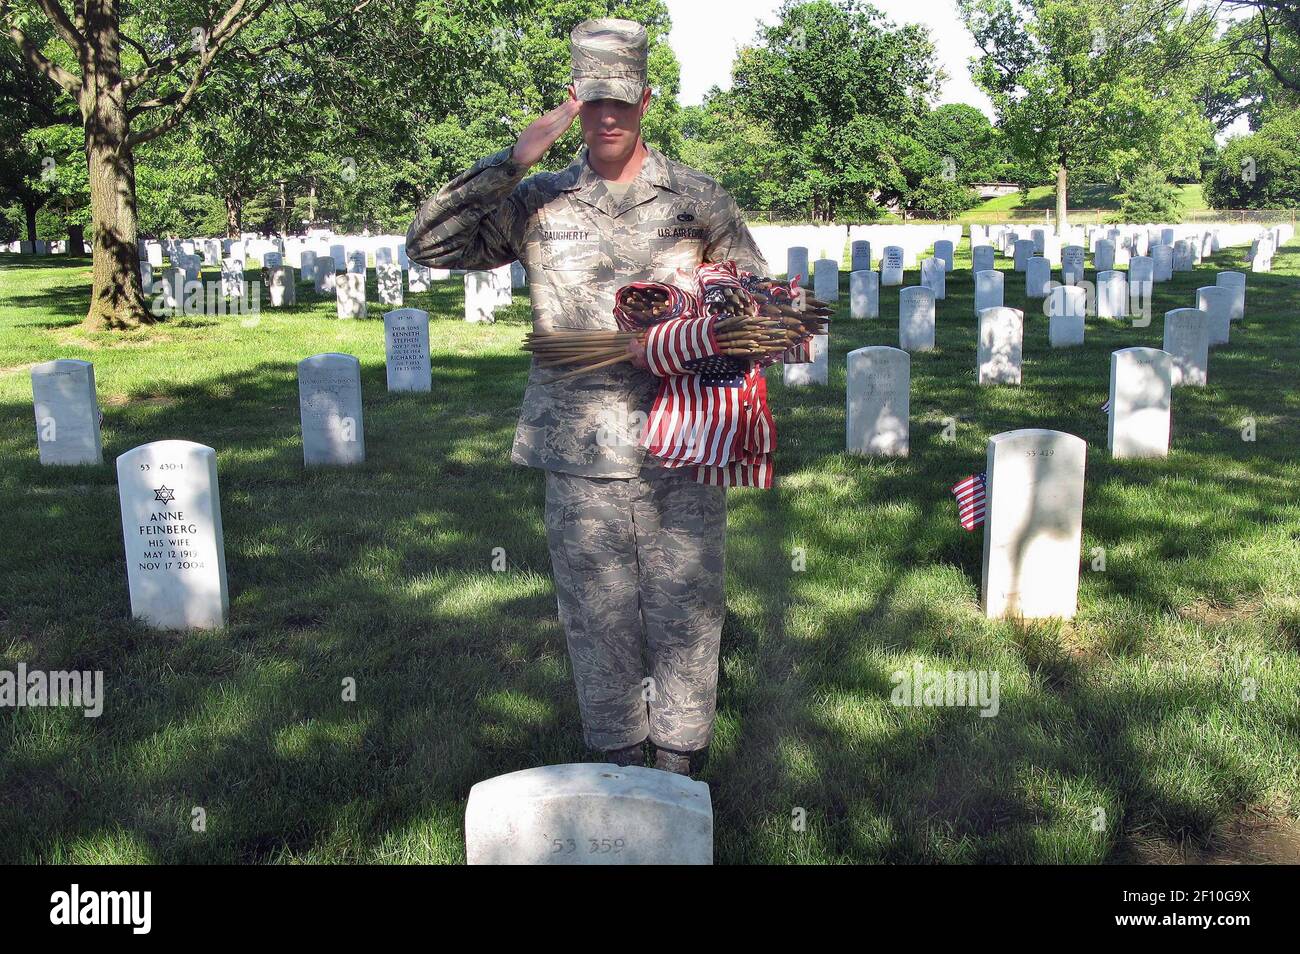 21 mai 2009 - Arlington, D.C. - Jacob Proffer, membre de la Garde d'honneur de l'Armée de l'Air des États-Unis, s'arrête pour saluer une tombe après avoir placé un drapeau miniature à sa base pendant l'hommage rendu aux drapeaux Iní“ au cimetière national d'Arlington, le 21 mai 2009. Quand je fais cela, il me fait prendre beaucoup plus de fierté chaque fois que je mets mon uniforme, voyant la mesure du sacrifice que beaucoup ont fait, il dit. Crédit photo : Donna Miles/DOD/Sipa Press/0905221905 Banque D'Images